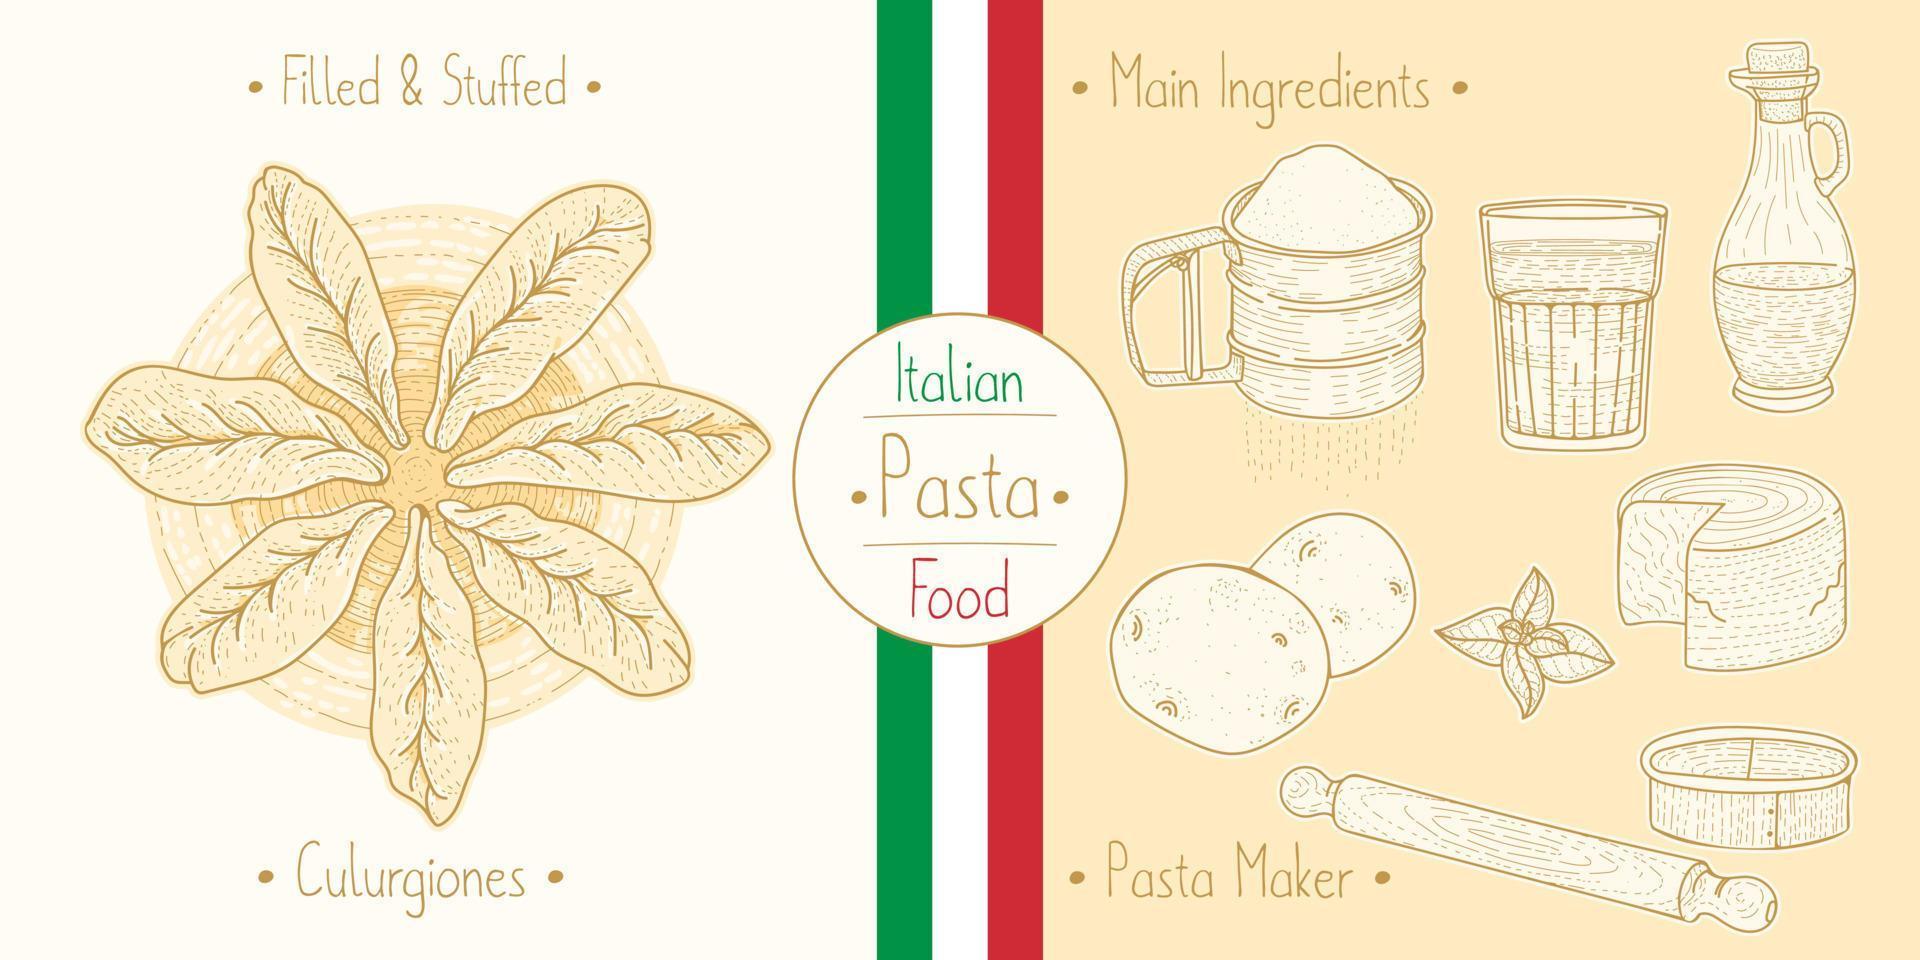 kochen italienisches essen gefüllte culugrione-nudeln mit füllung und hauptzutaten und ausrüstung für nudelhersteller, skizzieren von illustrationen im vintage-stil vektor